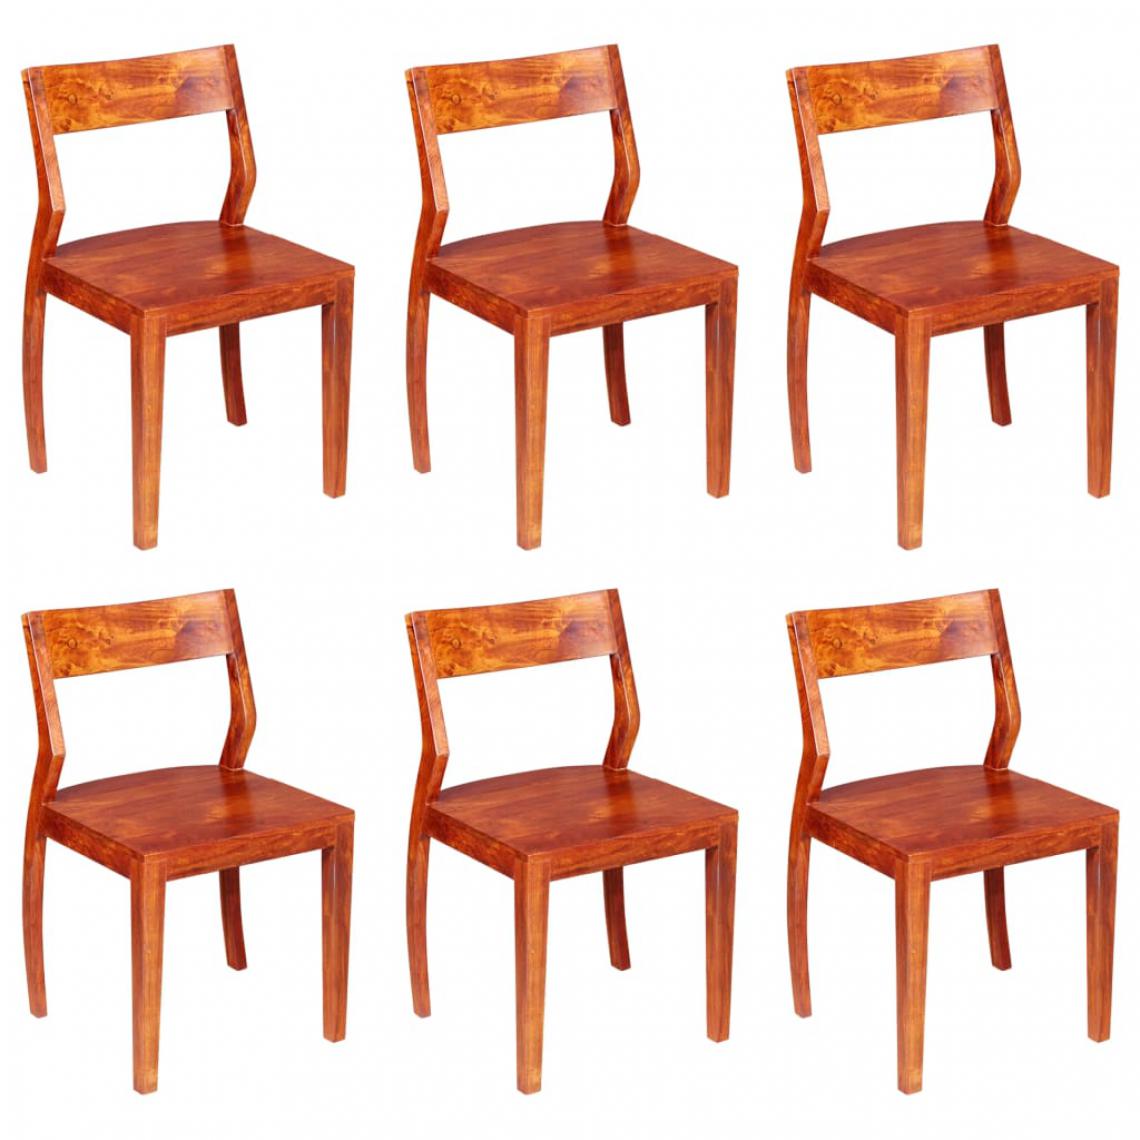 Chunhelife - Chaises de salle à manger 6 pcs Bois d'acacia massif et Sesham - Chaises